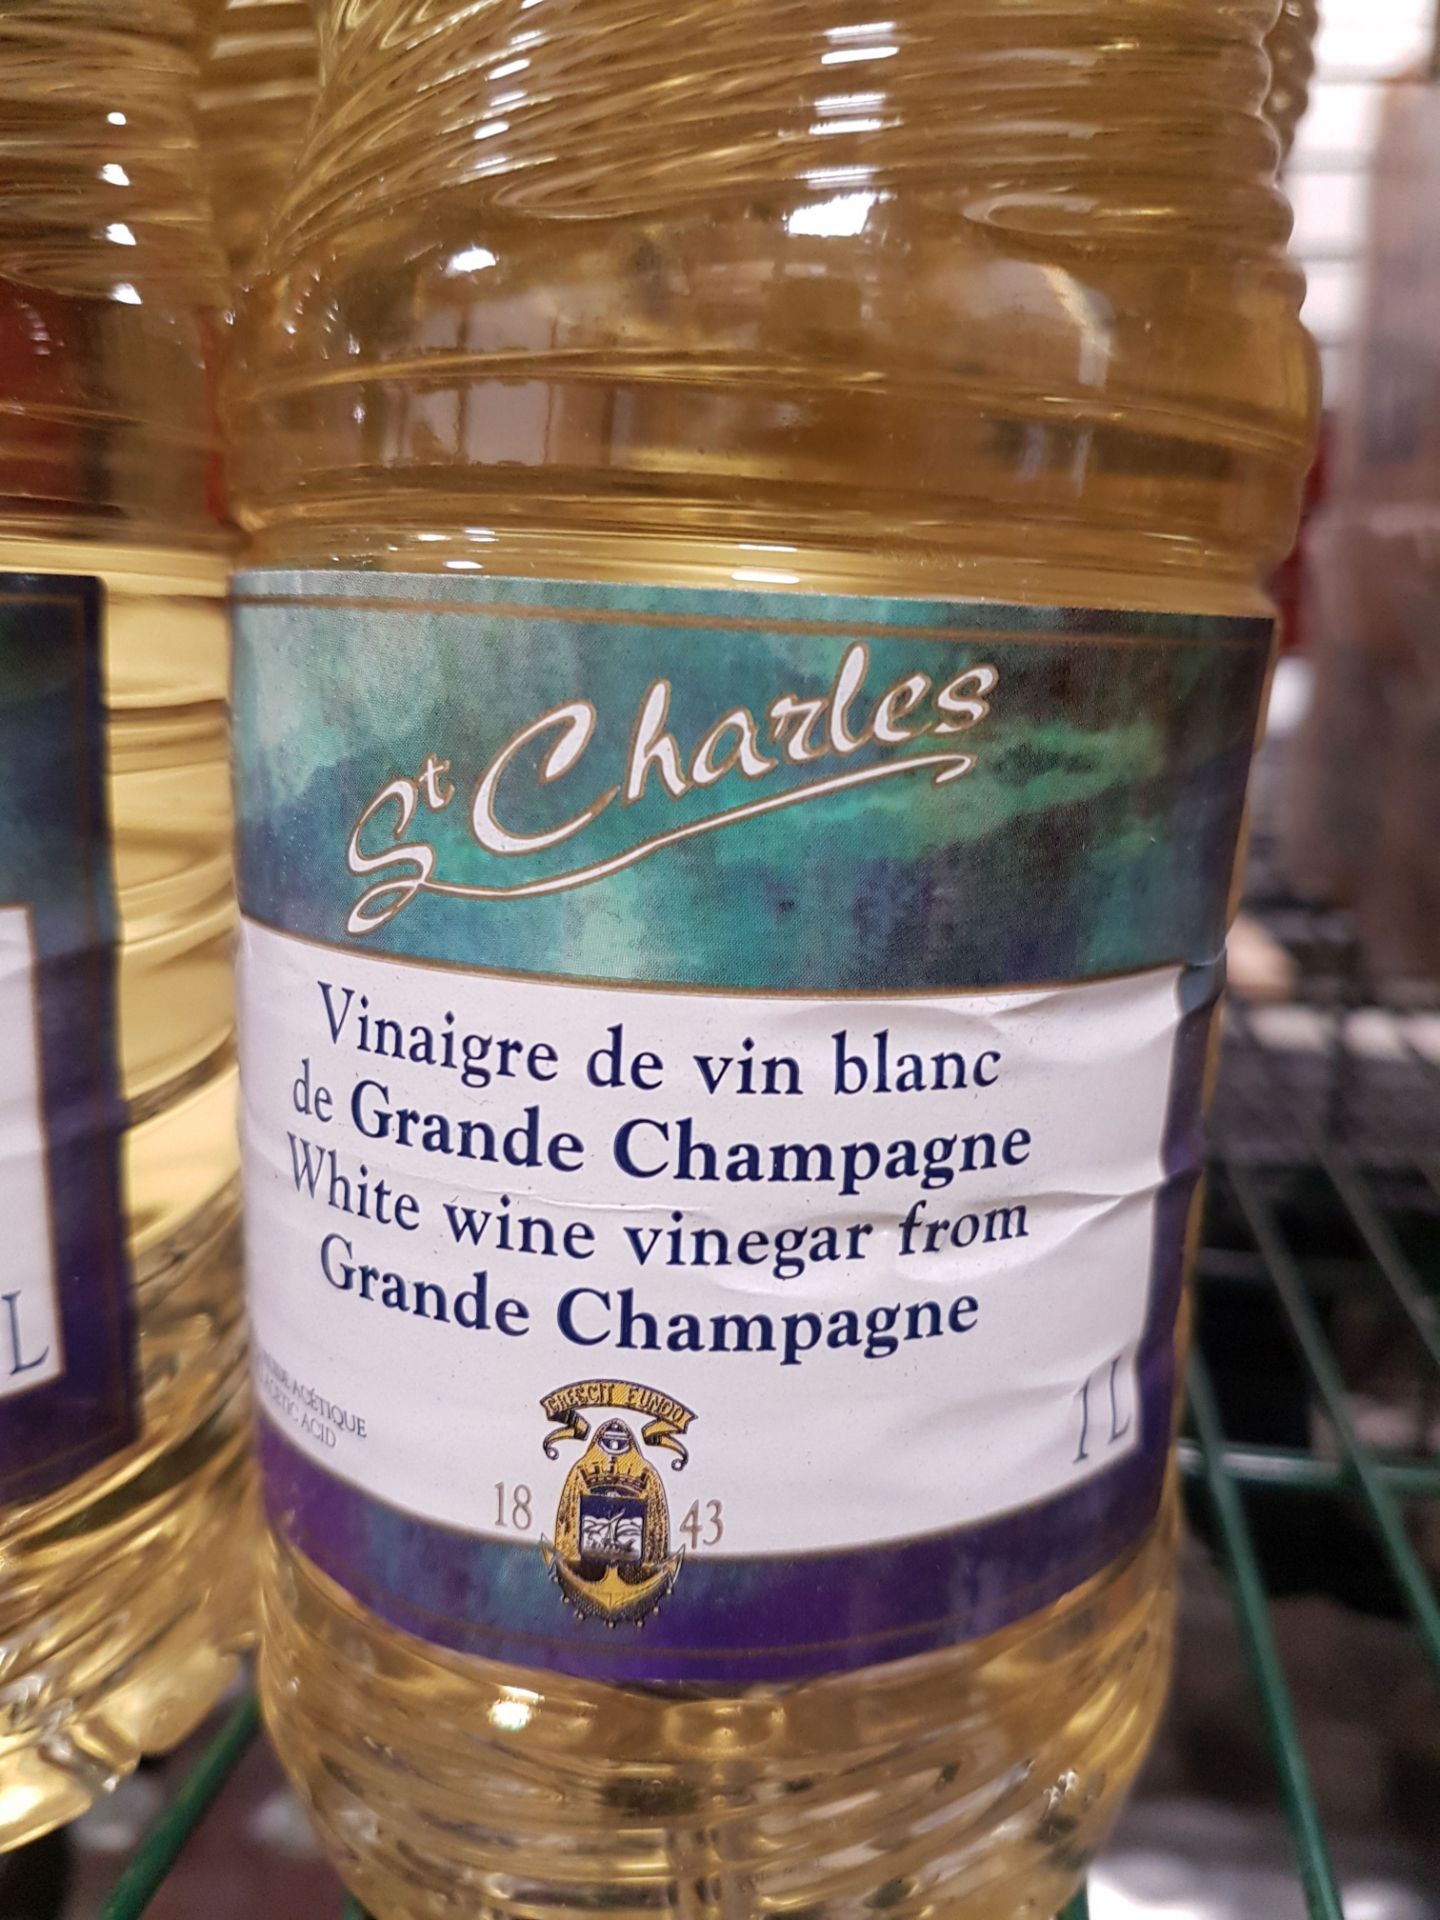 St. Charles White Wine Vinegar from Grande Champagne - 6 x 1lt